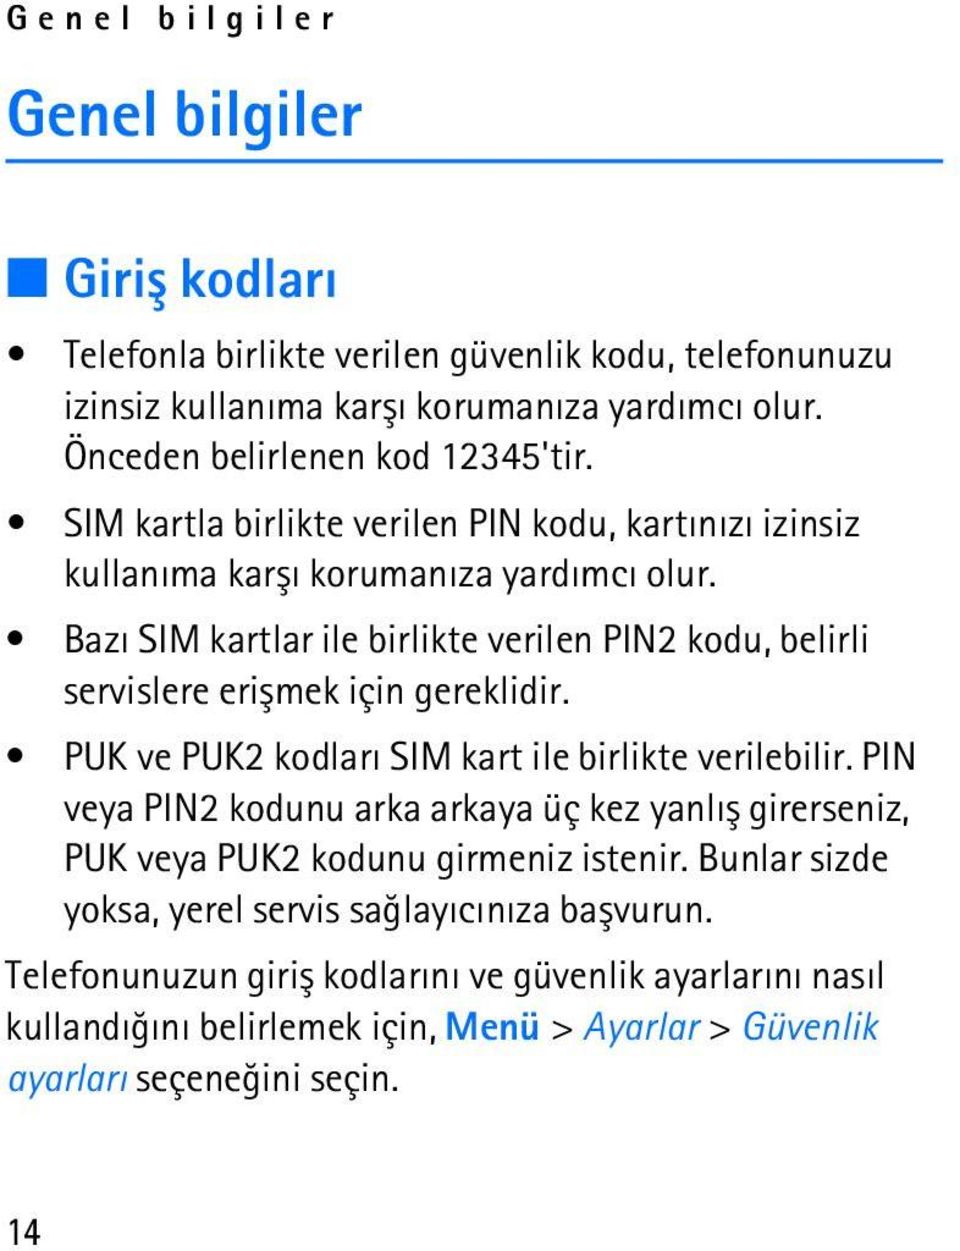 Bazý SIM kartlar ile birlikte verilen PIN2 kodu, belirli servislere eriþmek için gereklidir. PUK ve PUK2 kodlarý SIM kart ile birlikte verilebilir.